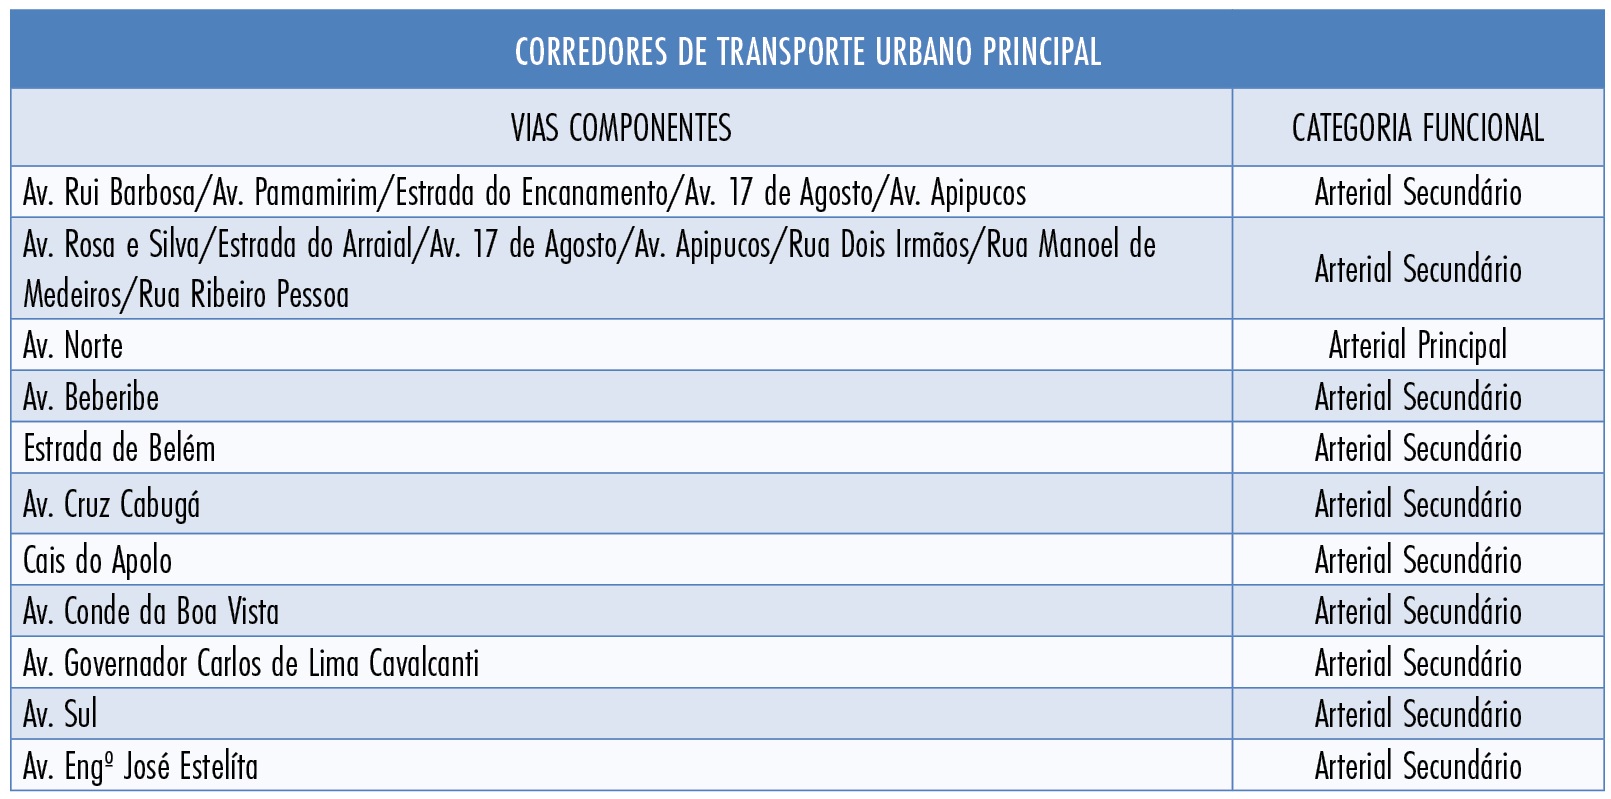  Classificação dos Corredores de Transp. Urb. Principais. Fonte: LUOS / Elaboração: ICPS